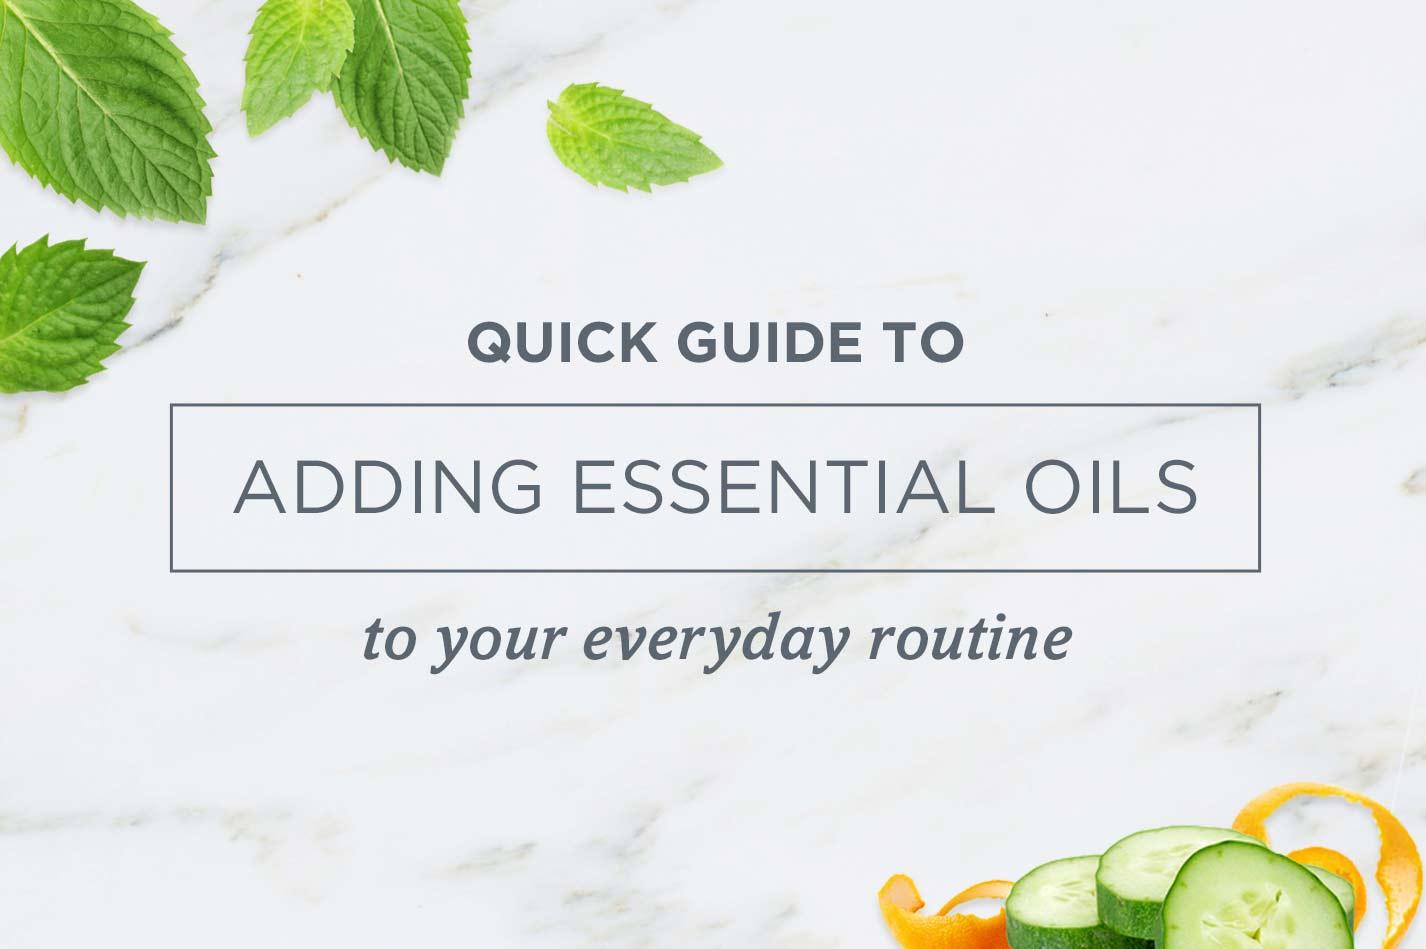 Guide to Adding Essential Oils